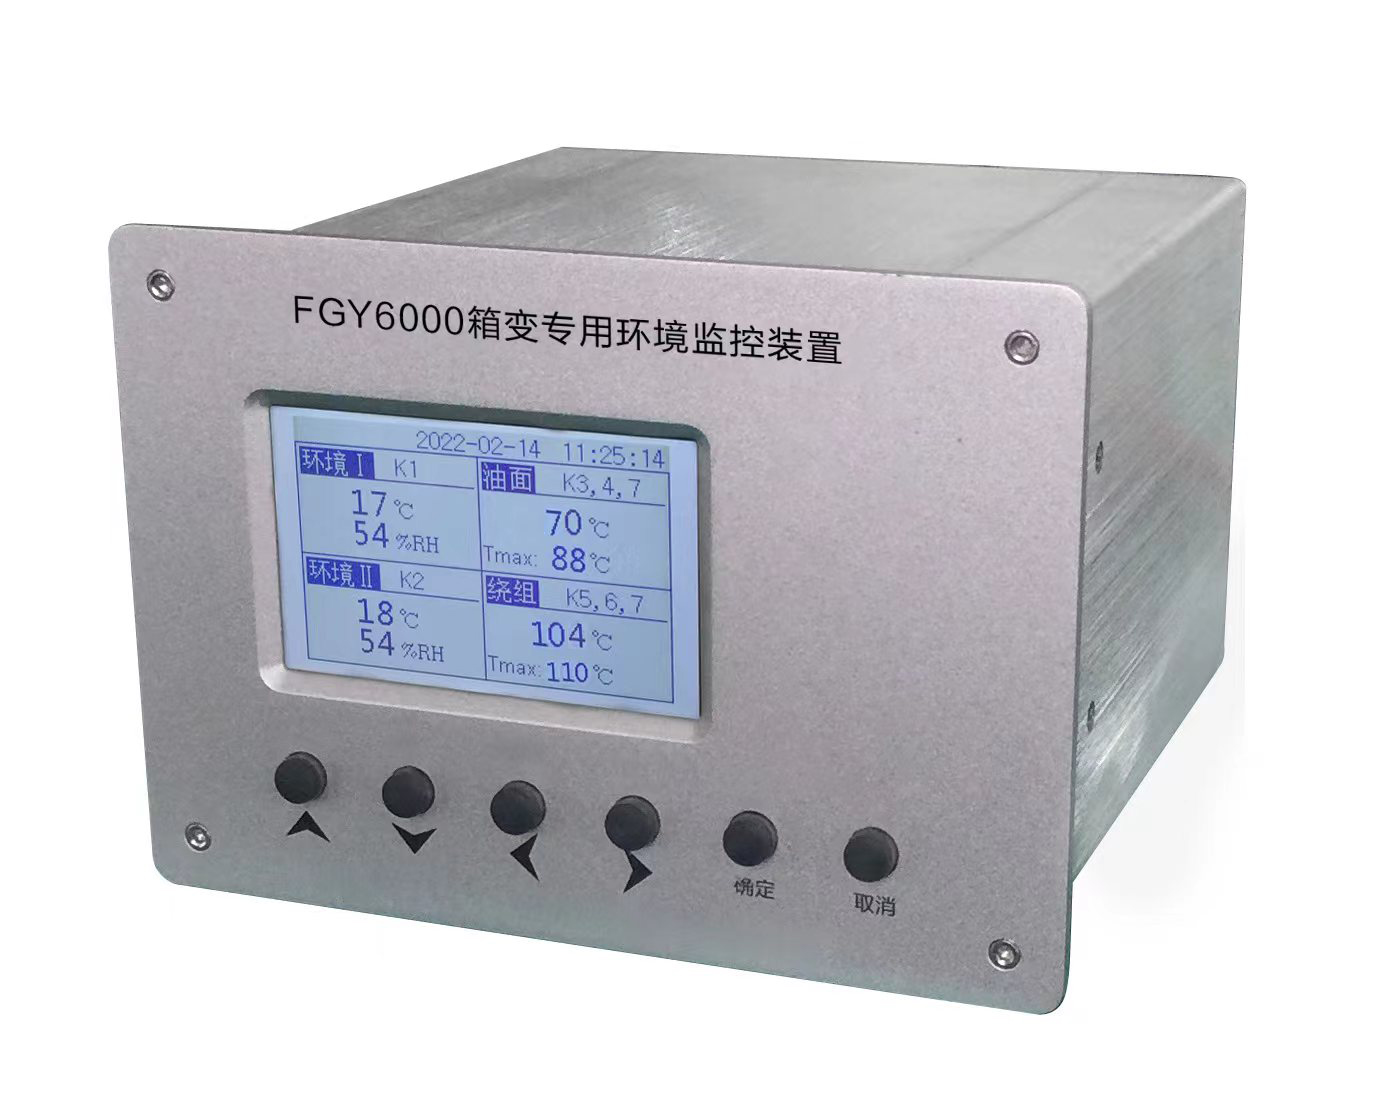 FGY6000系列箱變專用環境管理系統